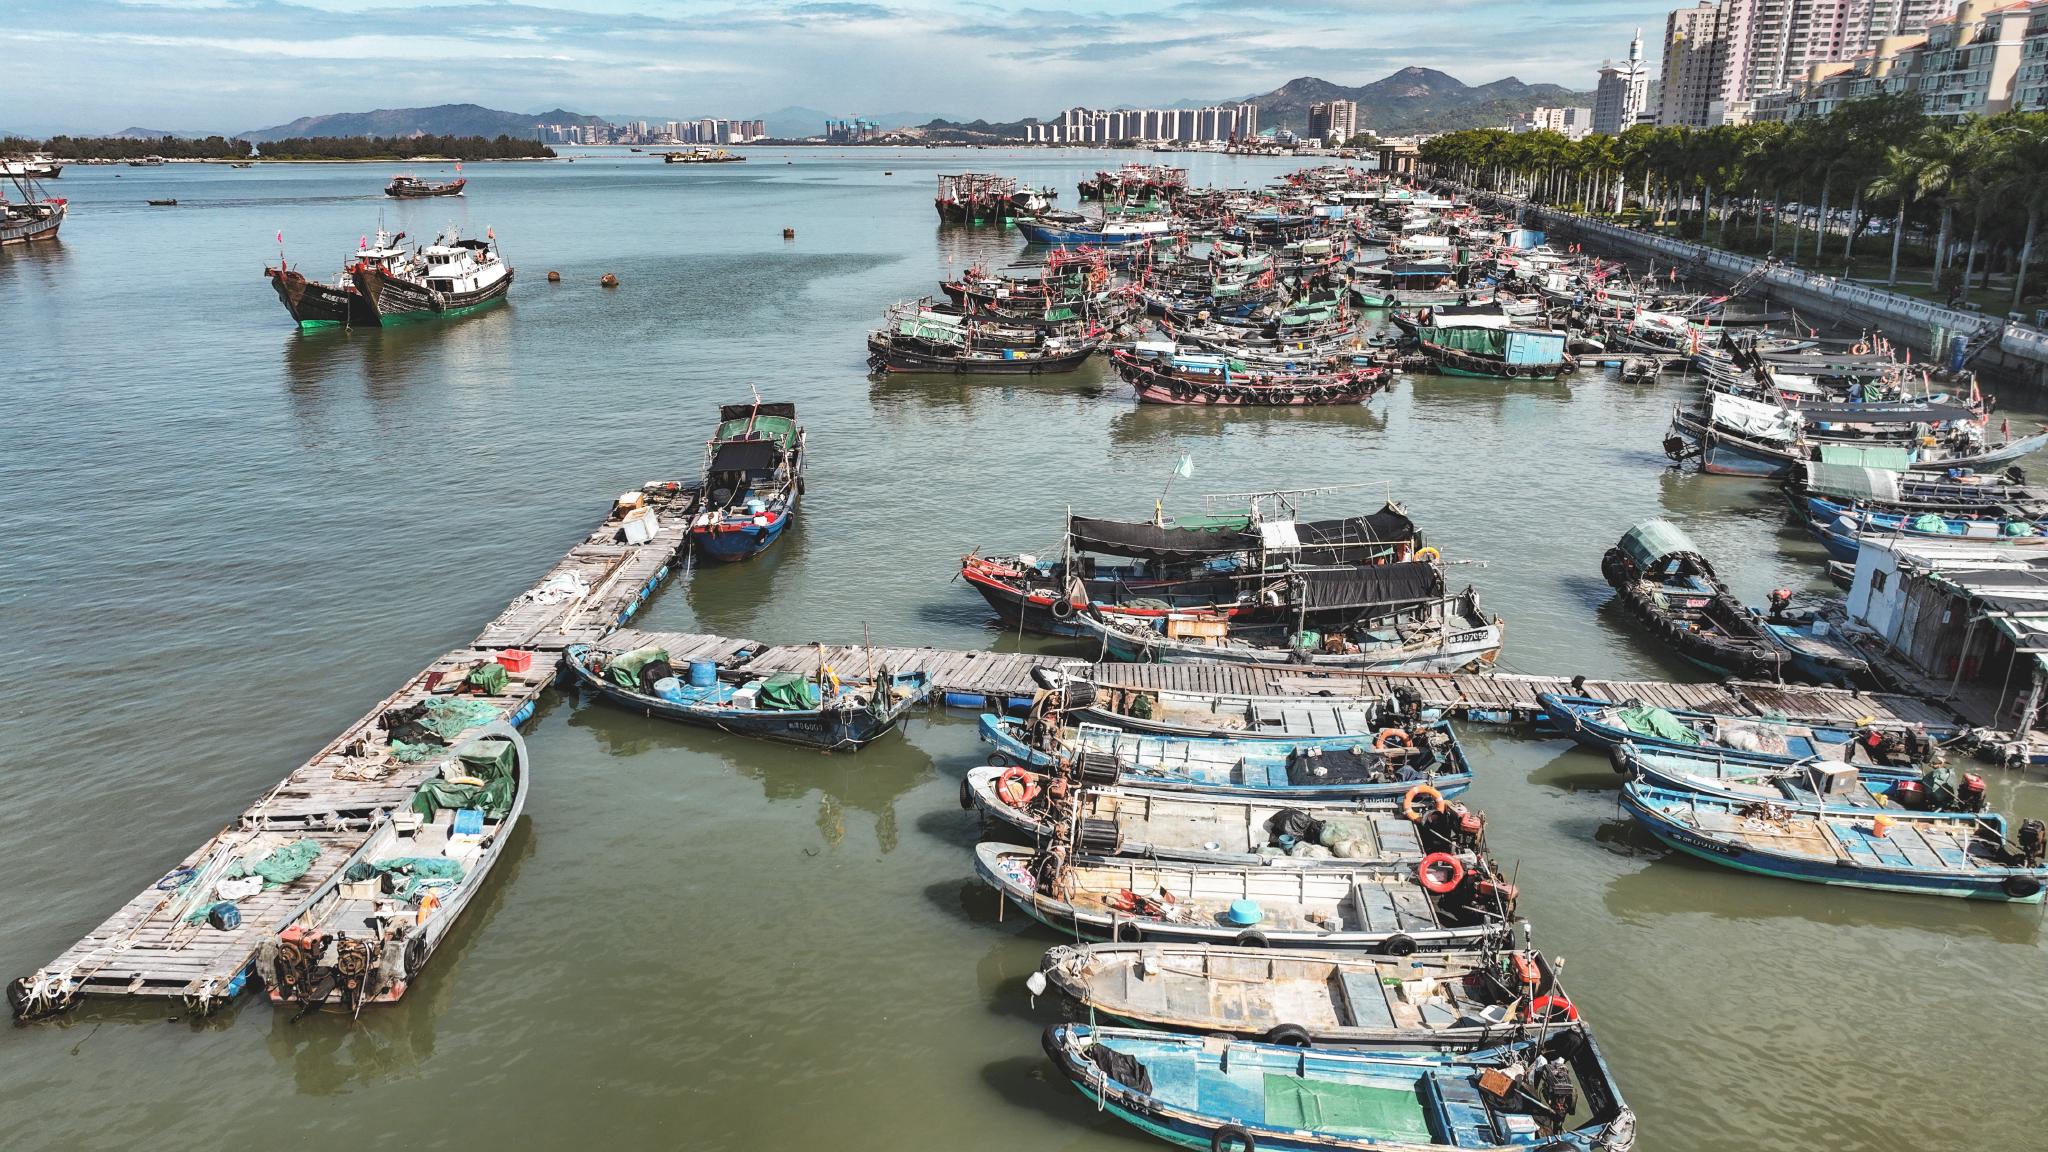 乘船在湖上观光,能近距离看到渔民日常的生活,很有香港的渔村味道